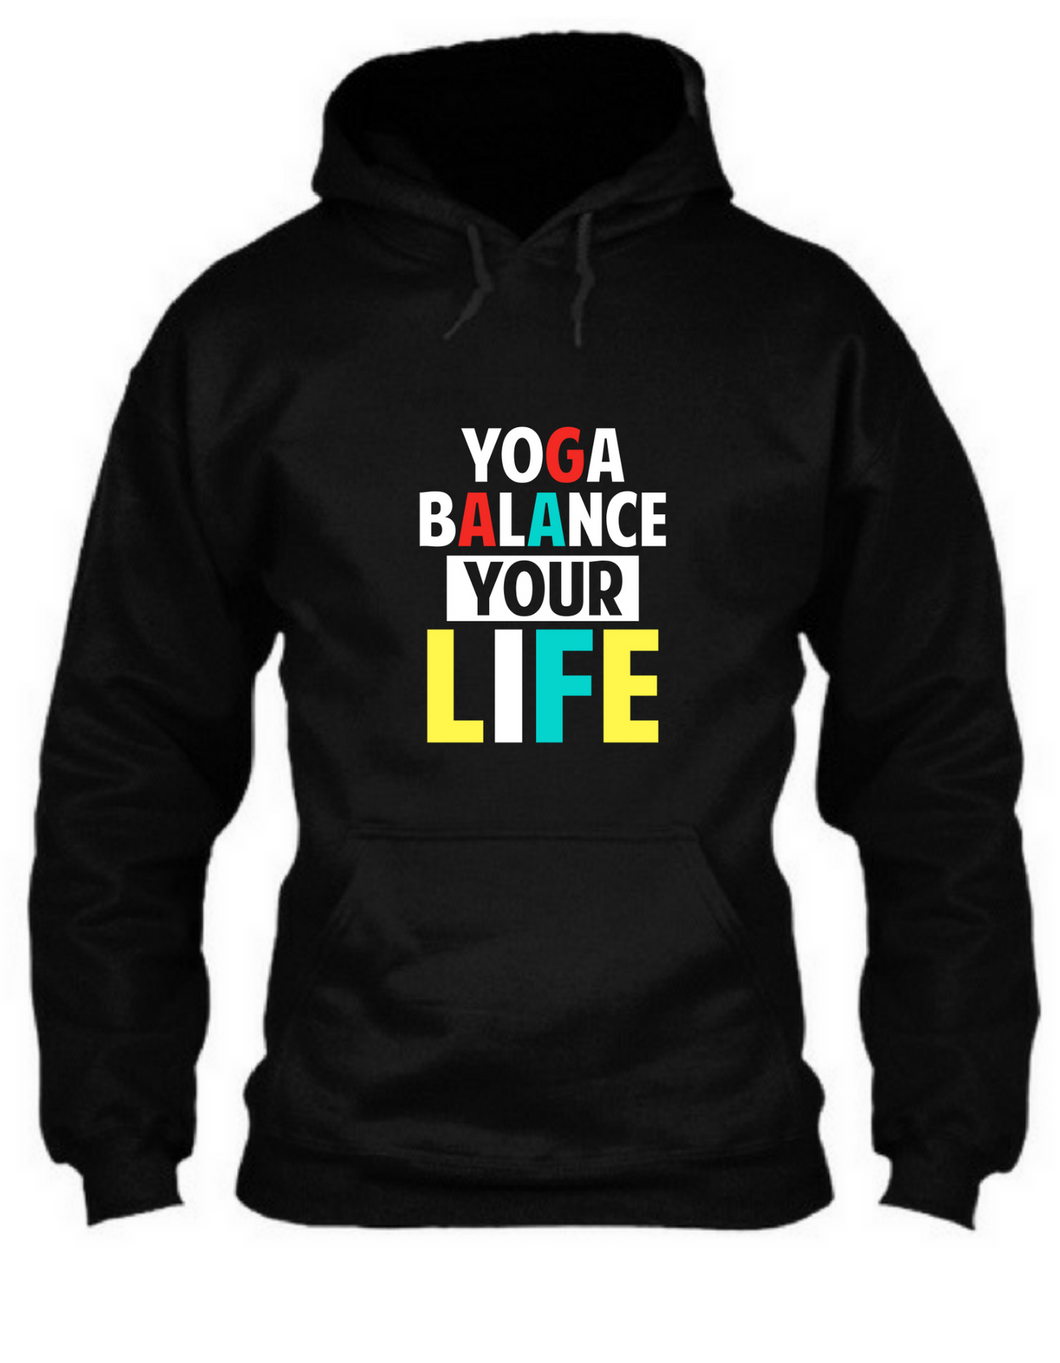 Yoga balance your life - Unisex Hoodie